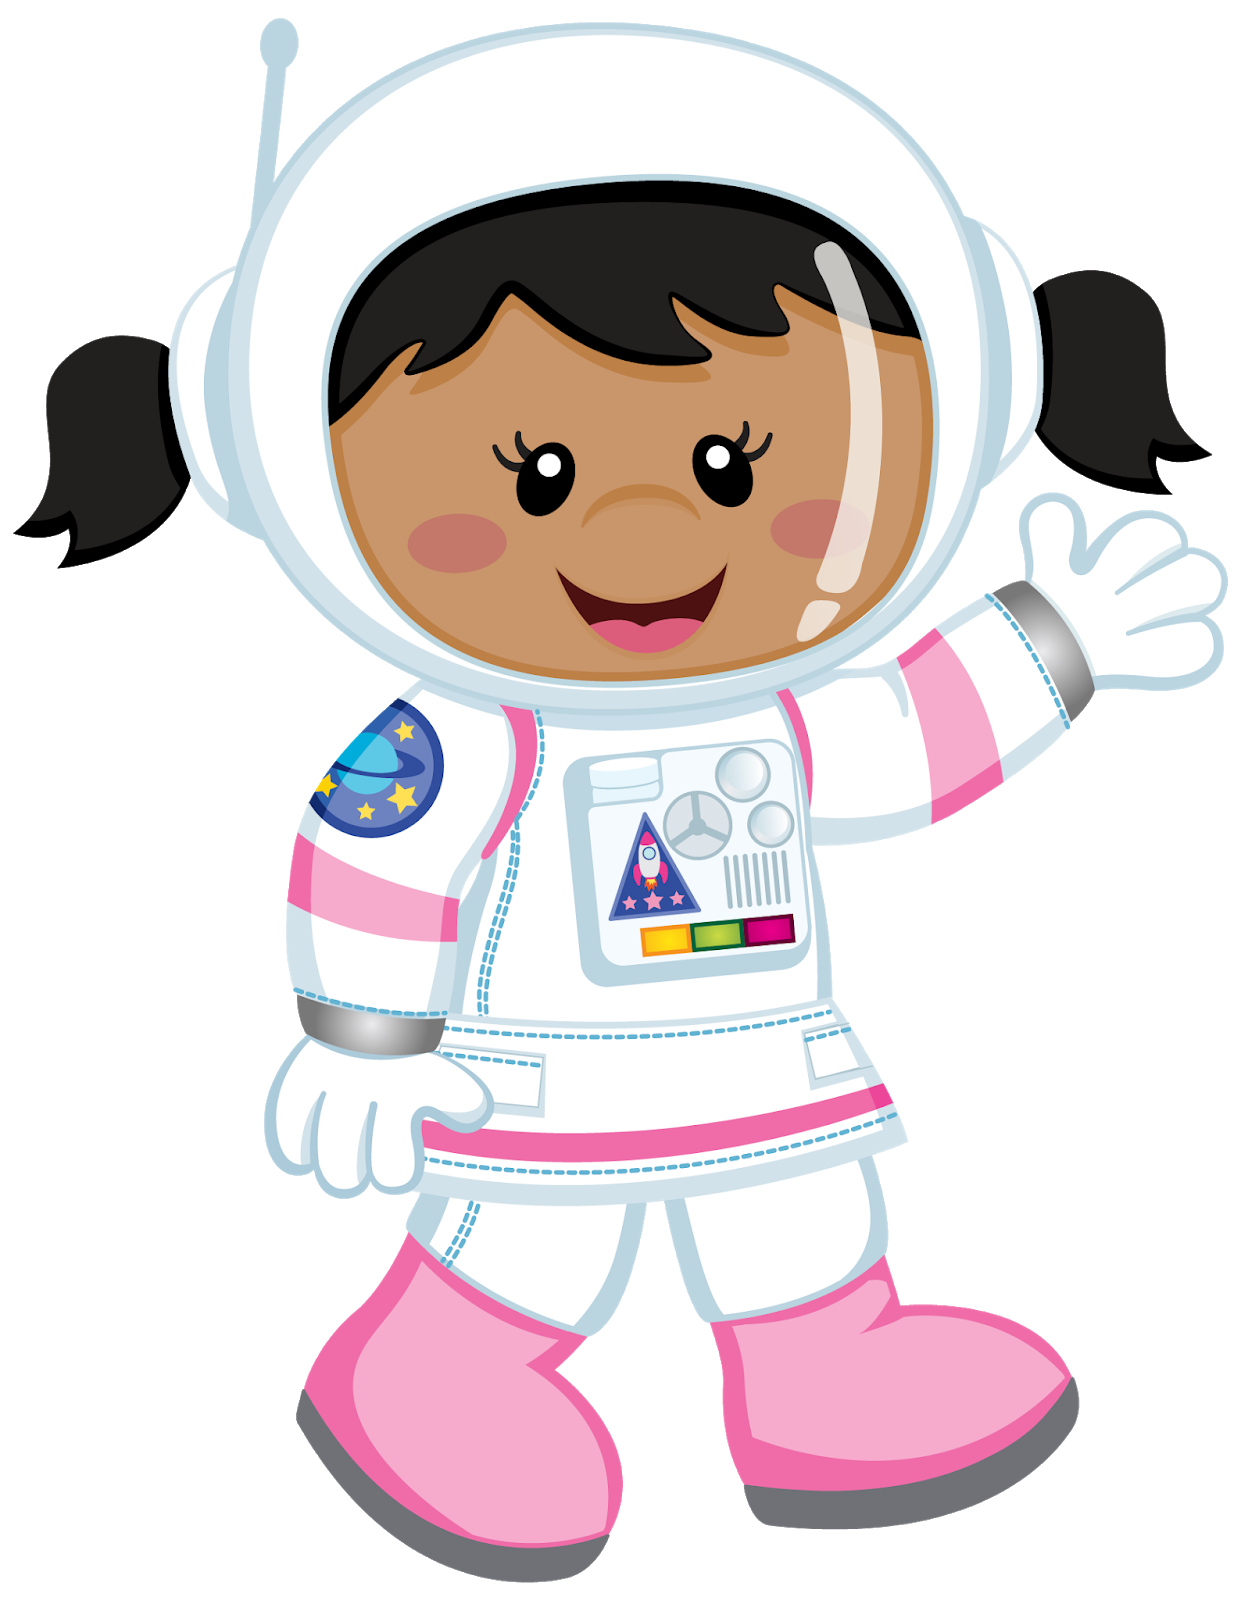 Космонавт цветной. Космонавт для детей. Астронавт мультяшный. Космонавт для детей без фона. Малыш космонавт.